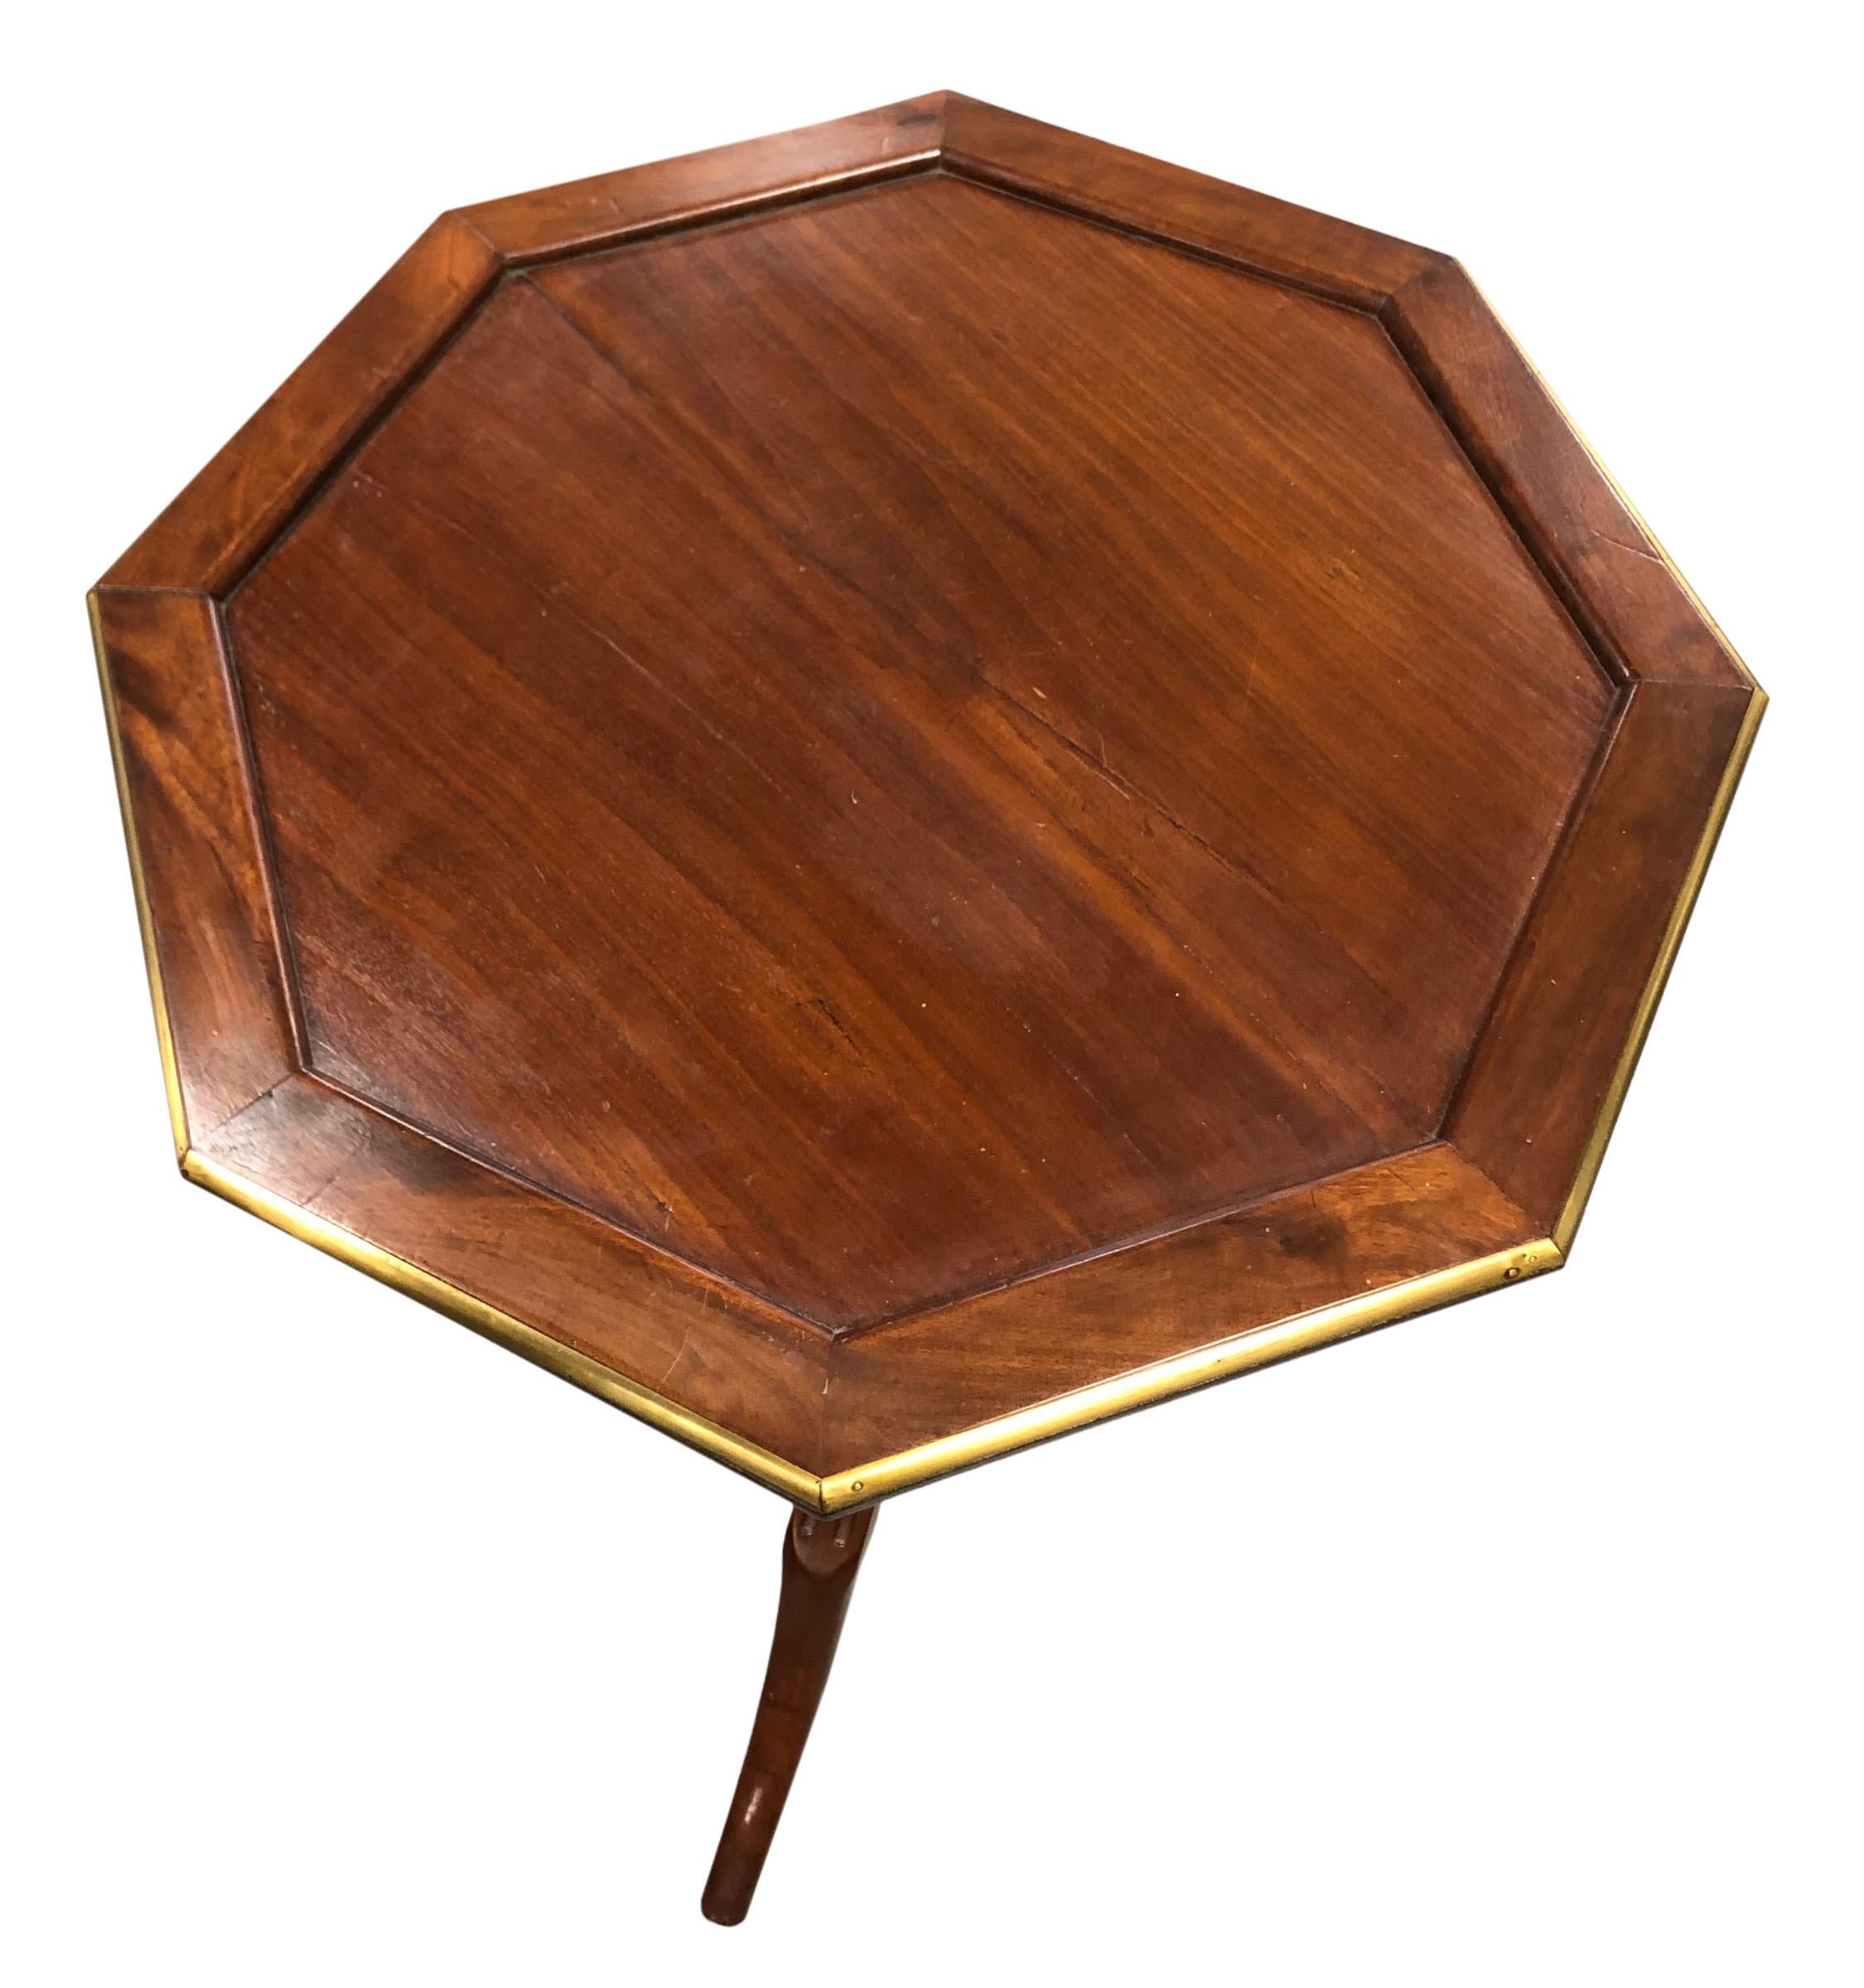 Une table d'appoint de forme octogonale du 18ème siècle en provenance de France. Bois avec un beau bord en laiton et est sur roues. Il n'est pas dans son état d'origine, c'était une capote basculante, maintenant elle est fixe.